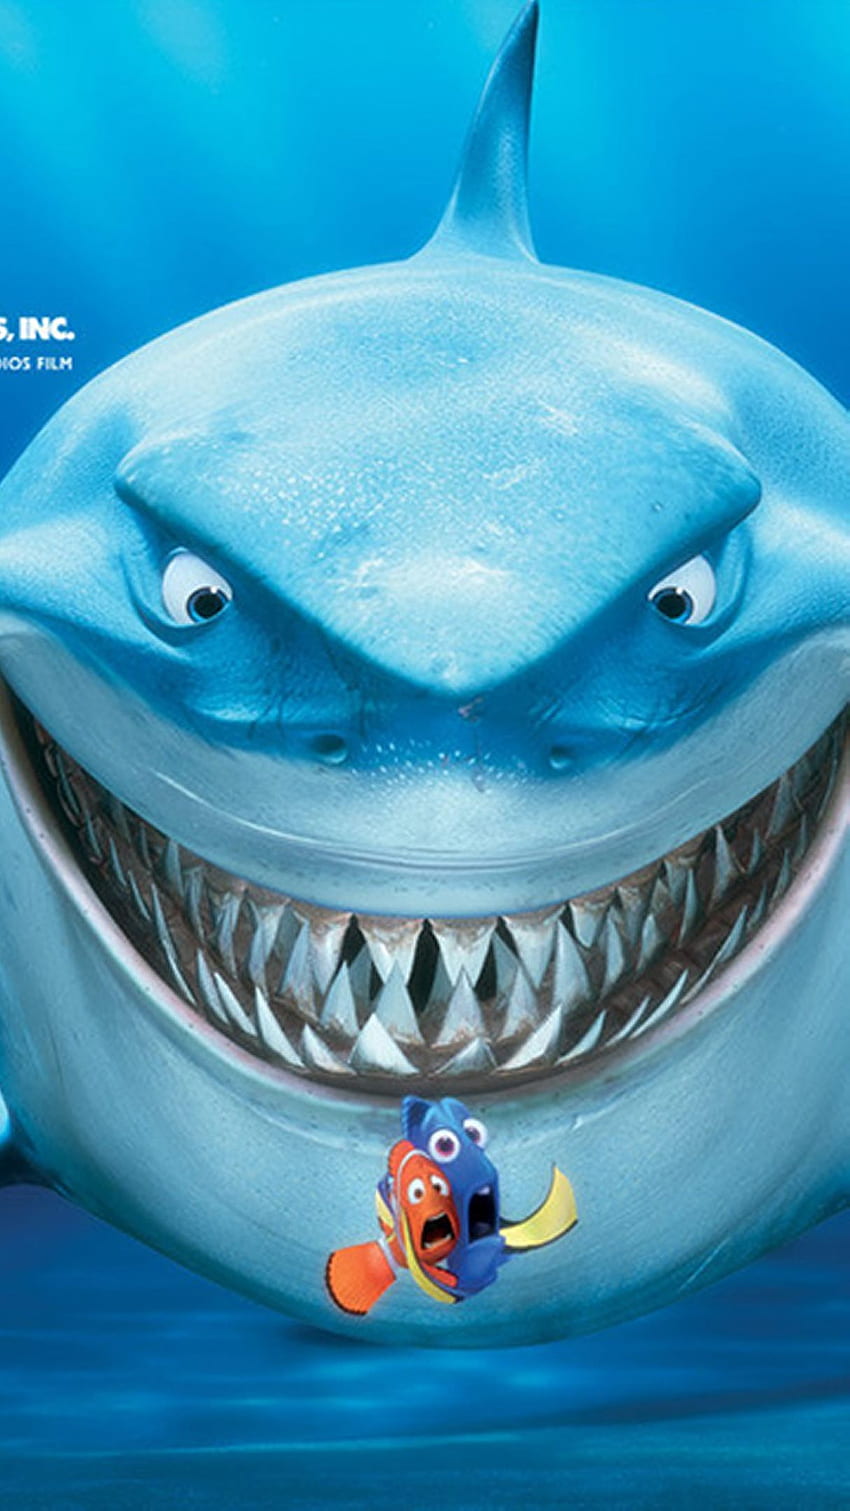 خلفيات للايفون iphone xs – Tecnologis. Disney phone background, Finding nemo, My childhood memories, Nemo Shark HD phone wallpaper